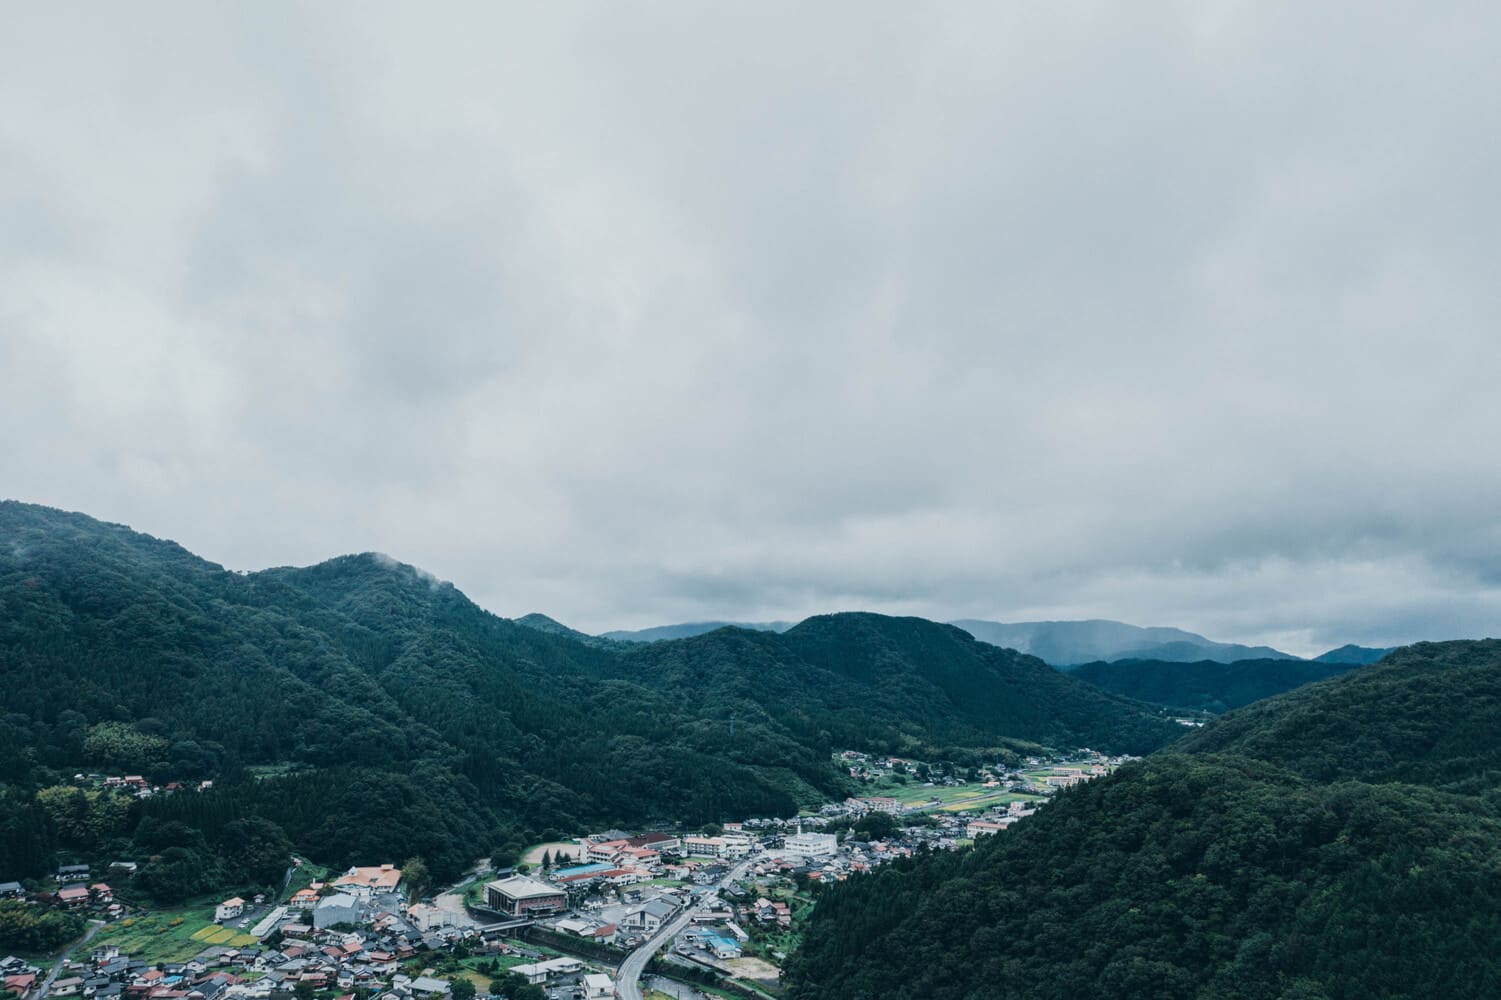 上空から見た雲南市の光景。山に挟まれた平地に街が栄えている